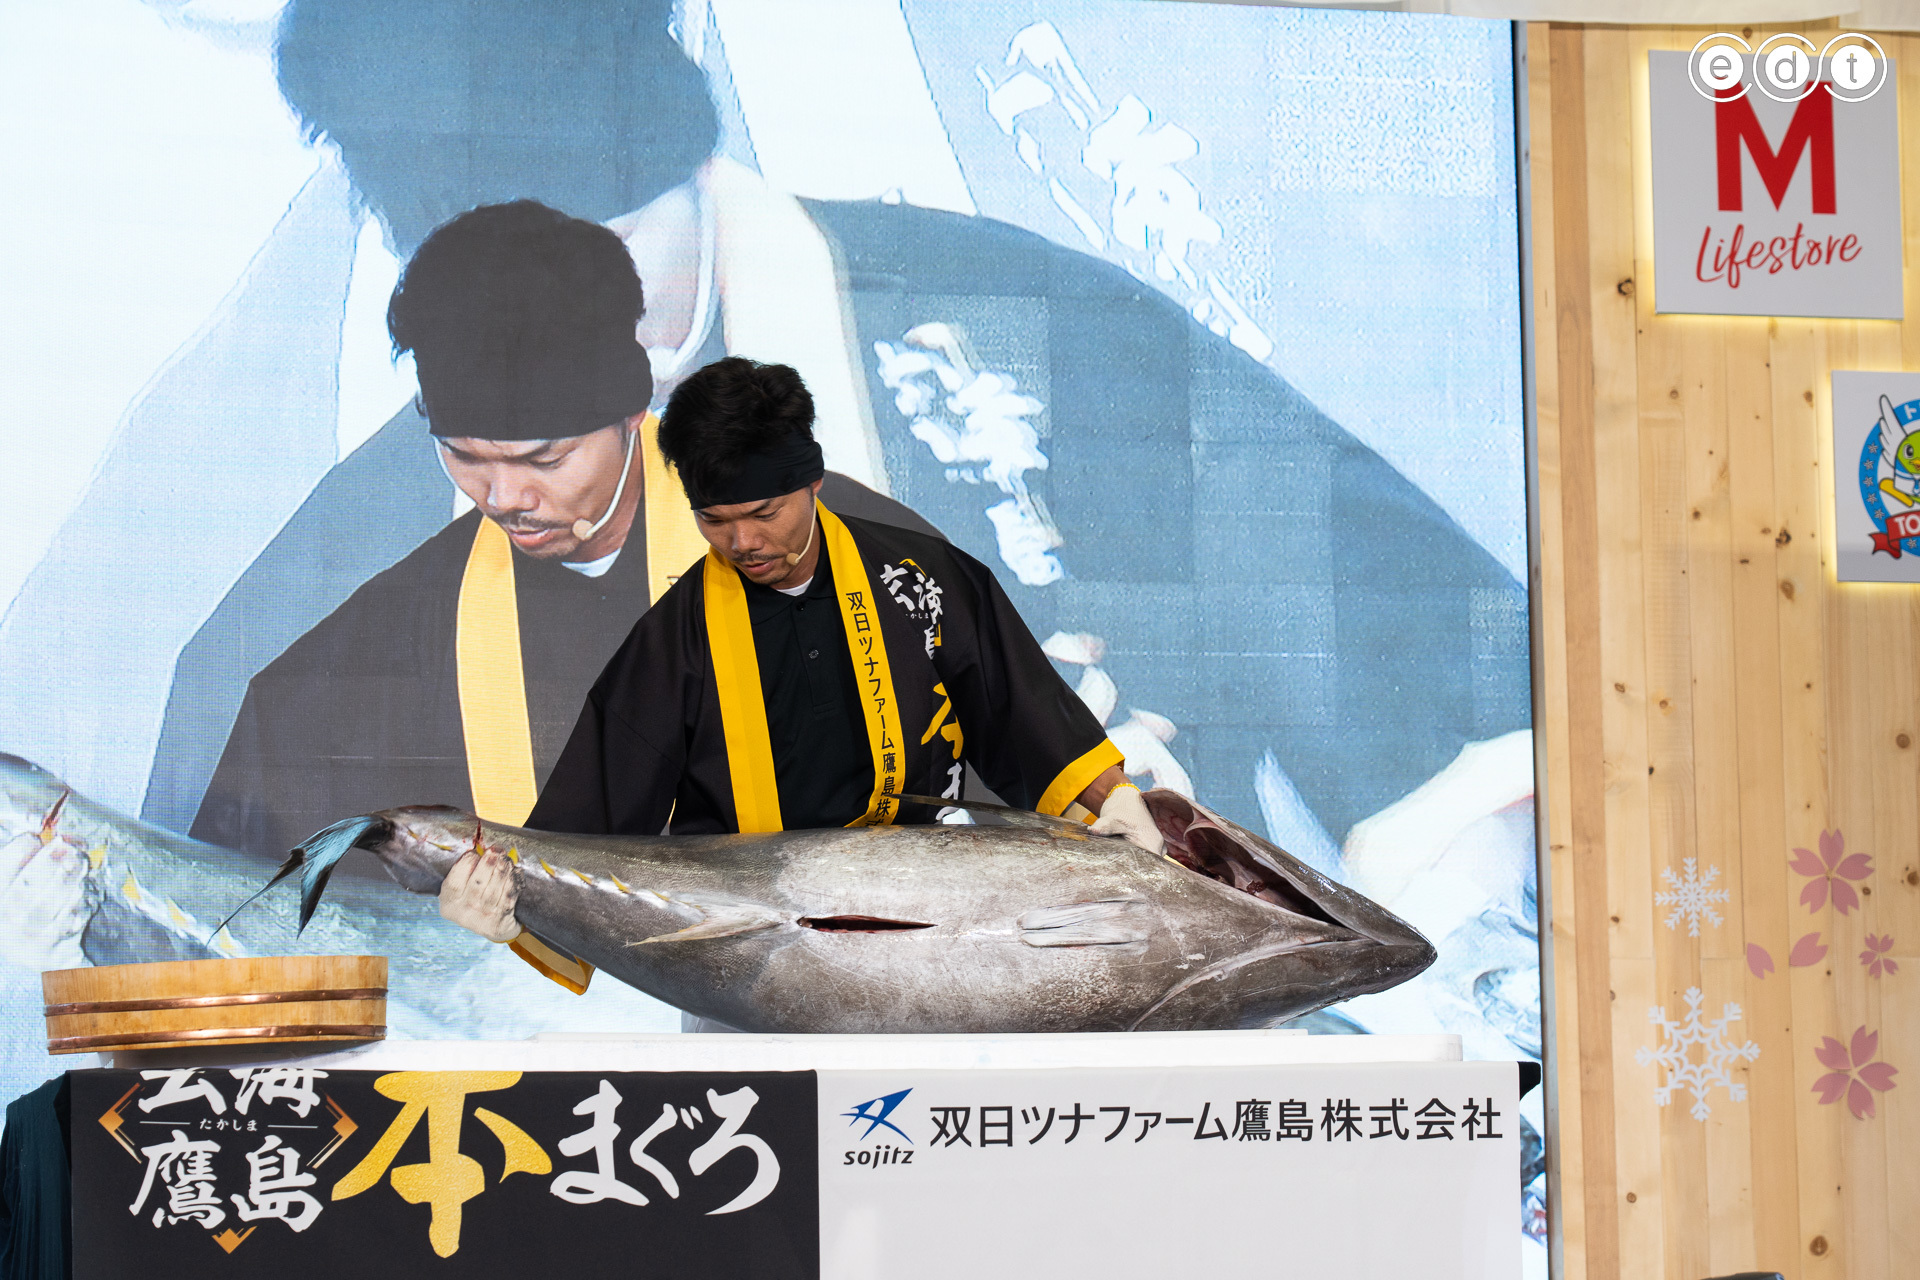 อาริอุระ ชุน มือแล่ปลา ทูน่าจากญี่ปุ่น